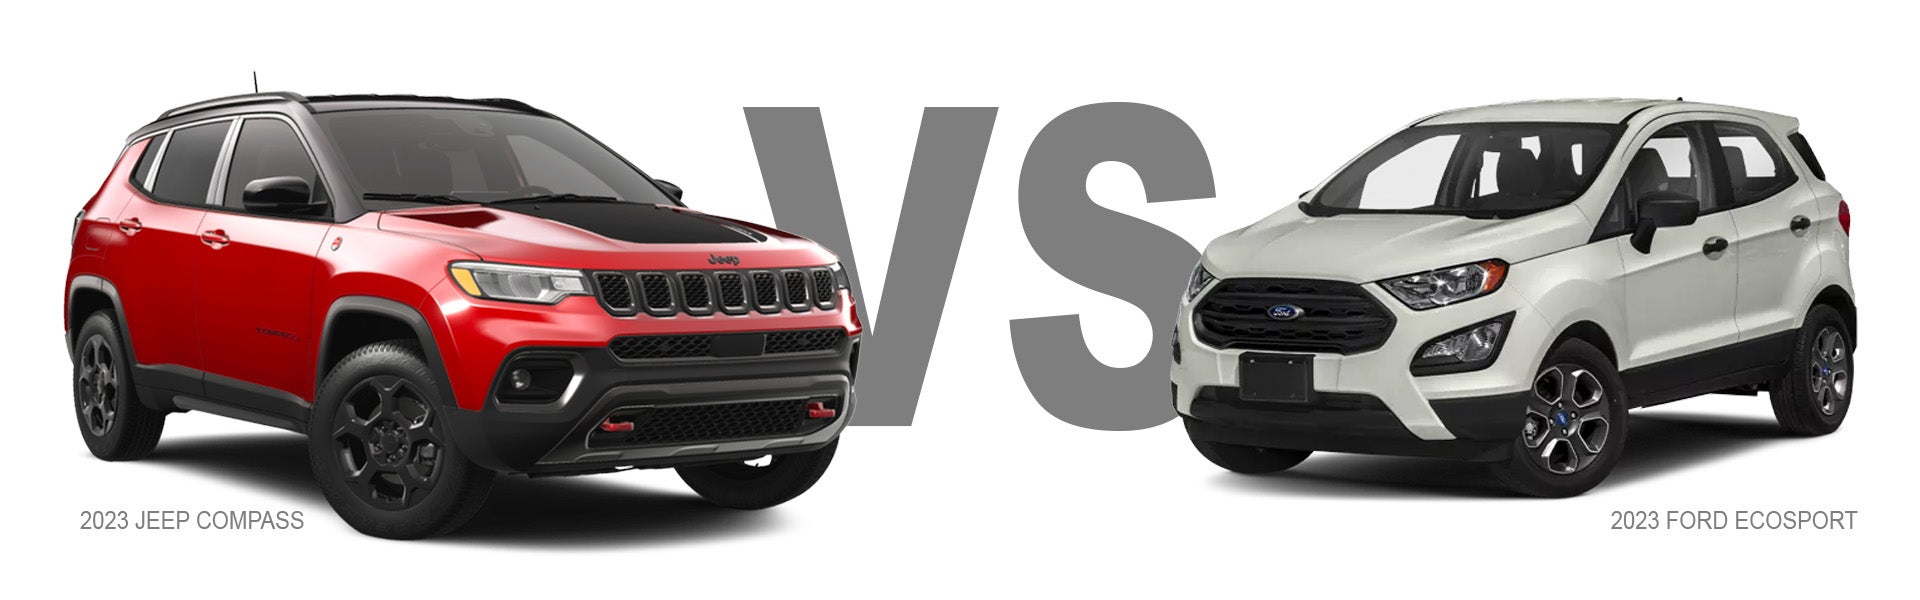 Jeep Compass vs Ford Ecosport Compact CUV Comparison